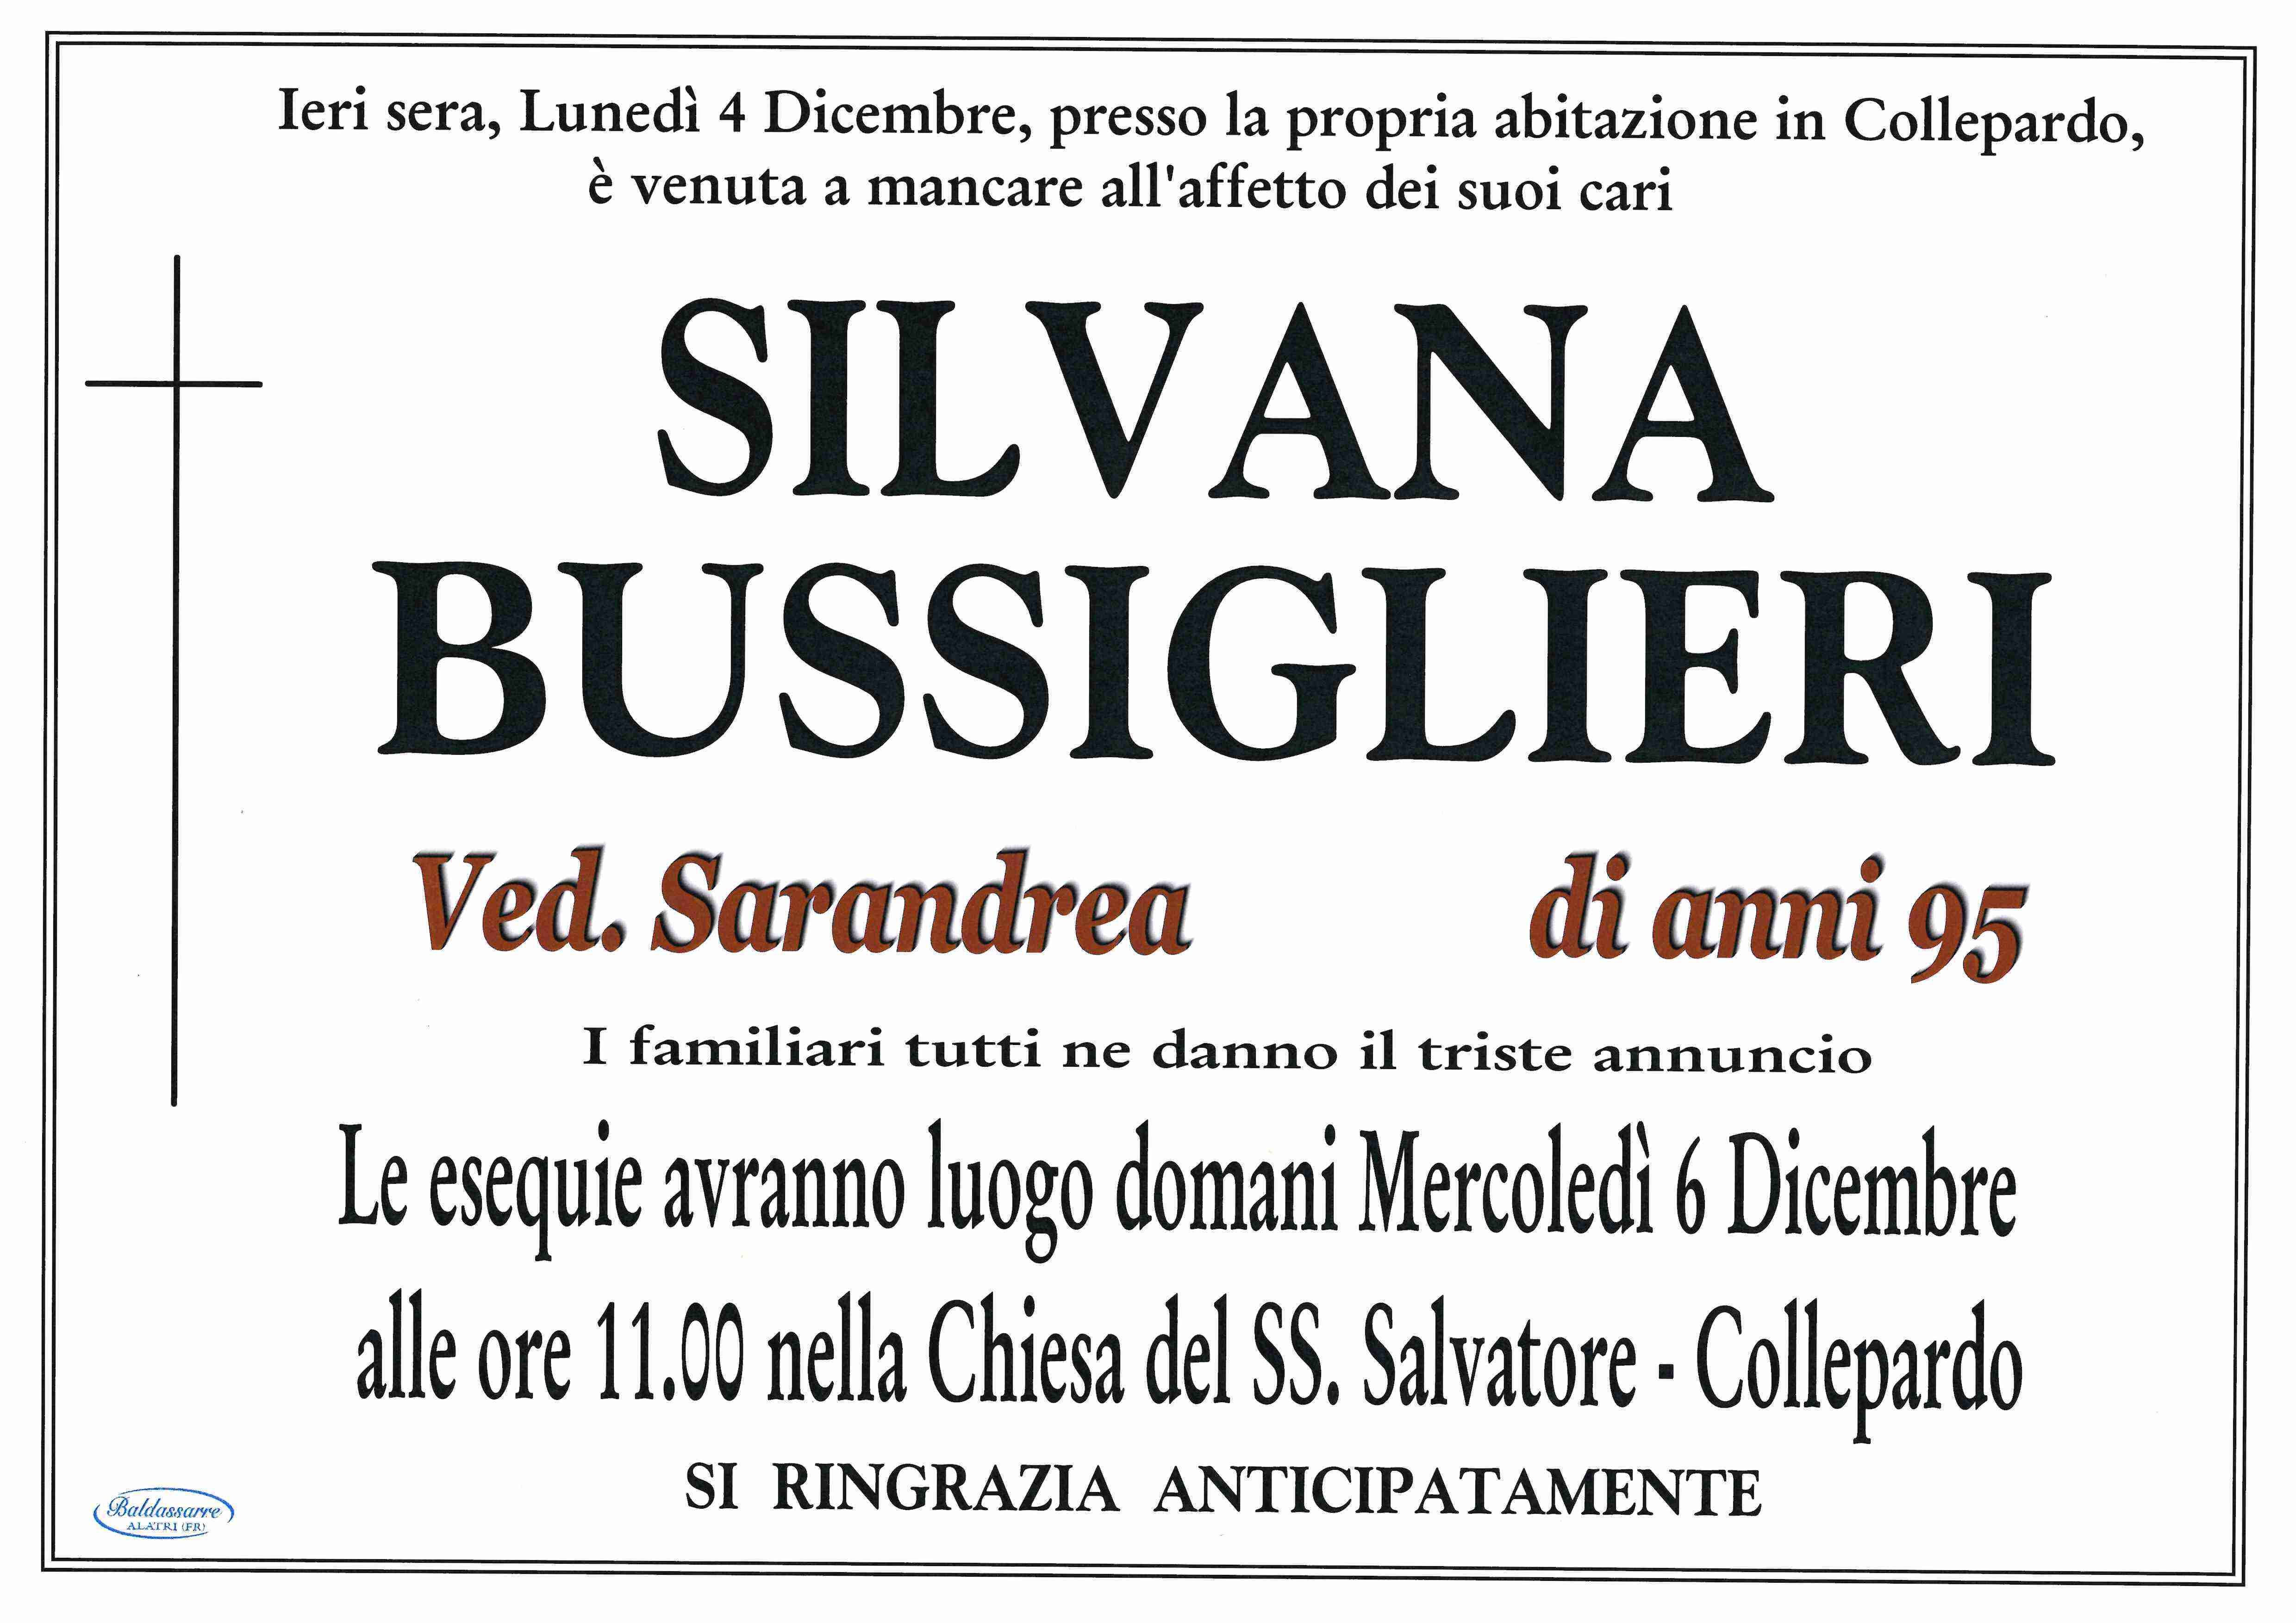 Silvana Bussiglieri